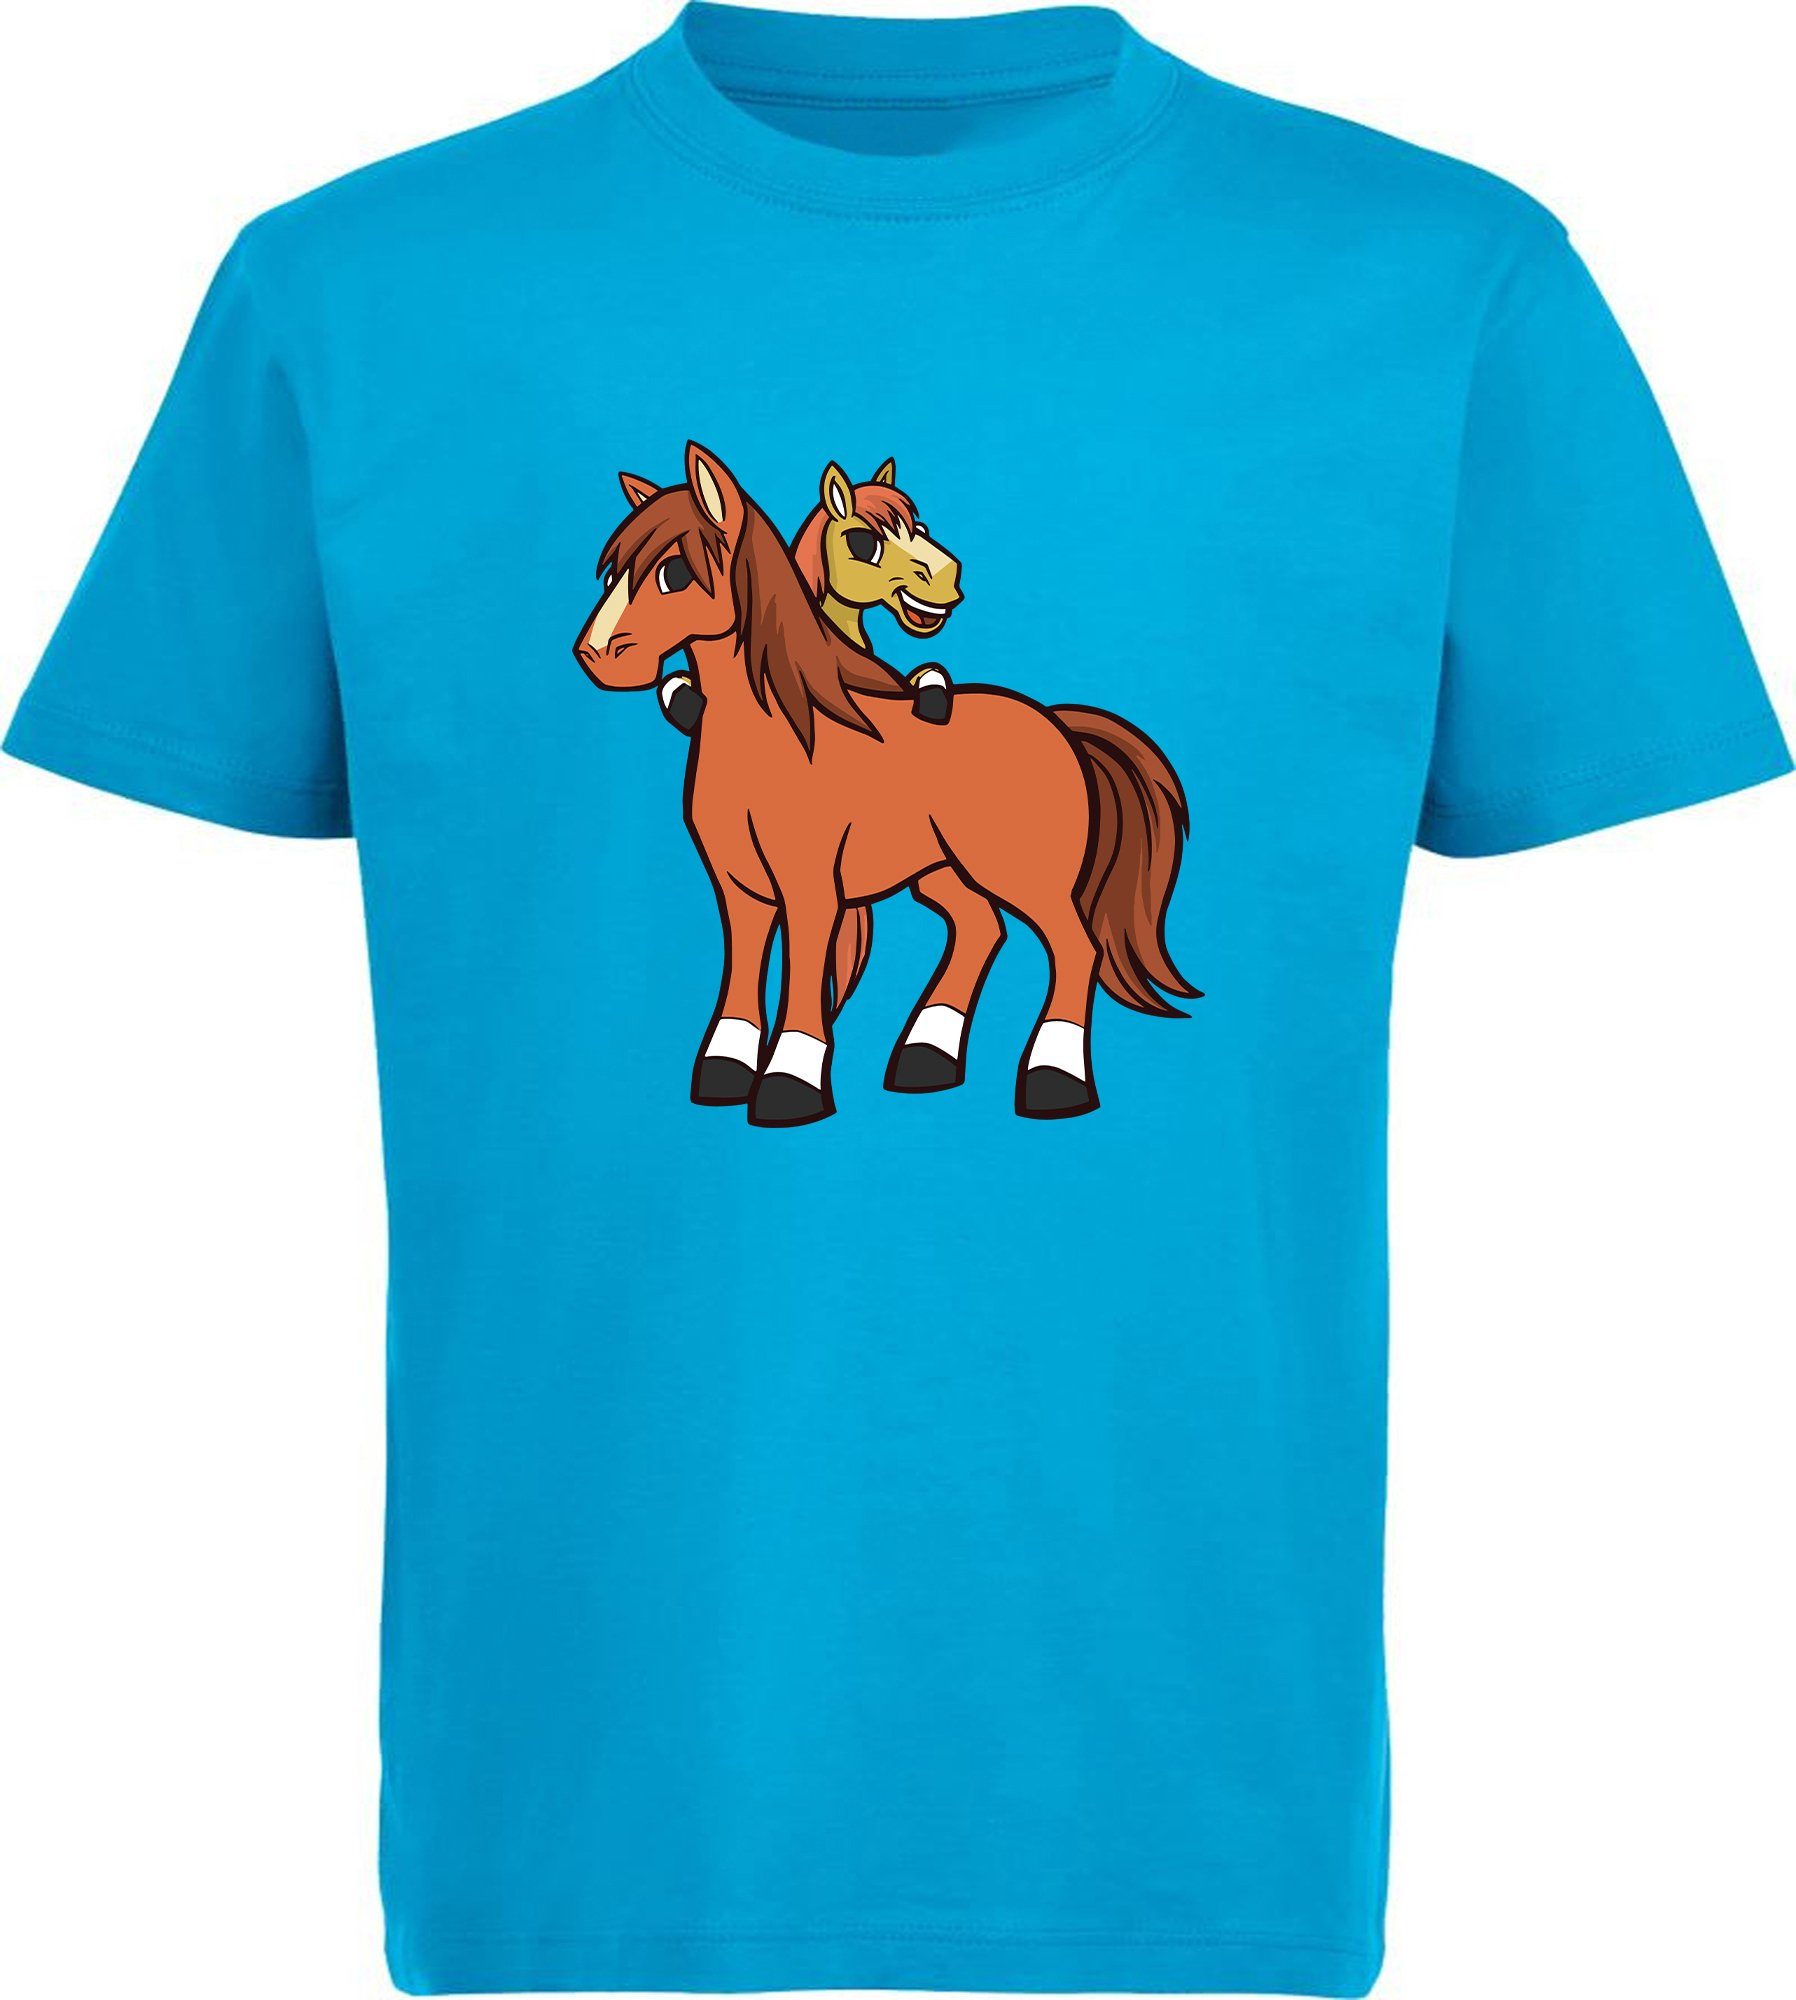 MyDesign24 T-Shirt Kinder Pferde Print Shirt bedruckt - 2 cartoon Pferde  Baumwollshirt mit Aufdruck, i251